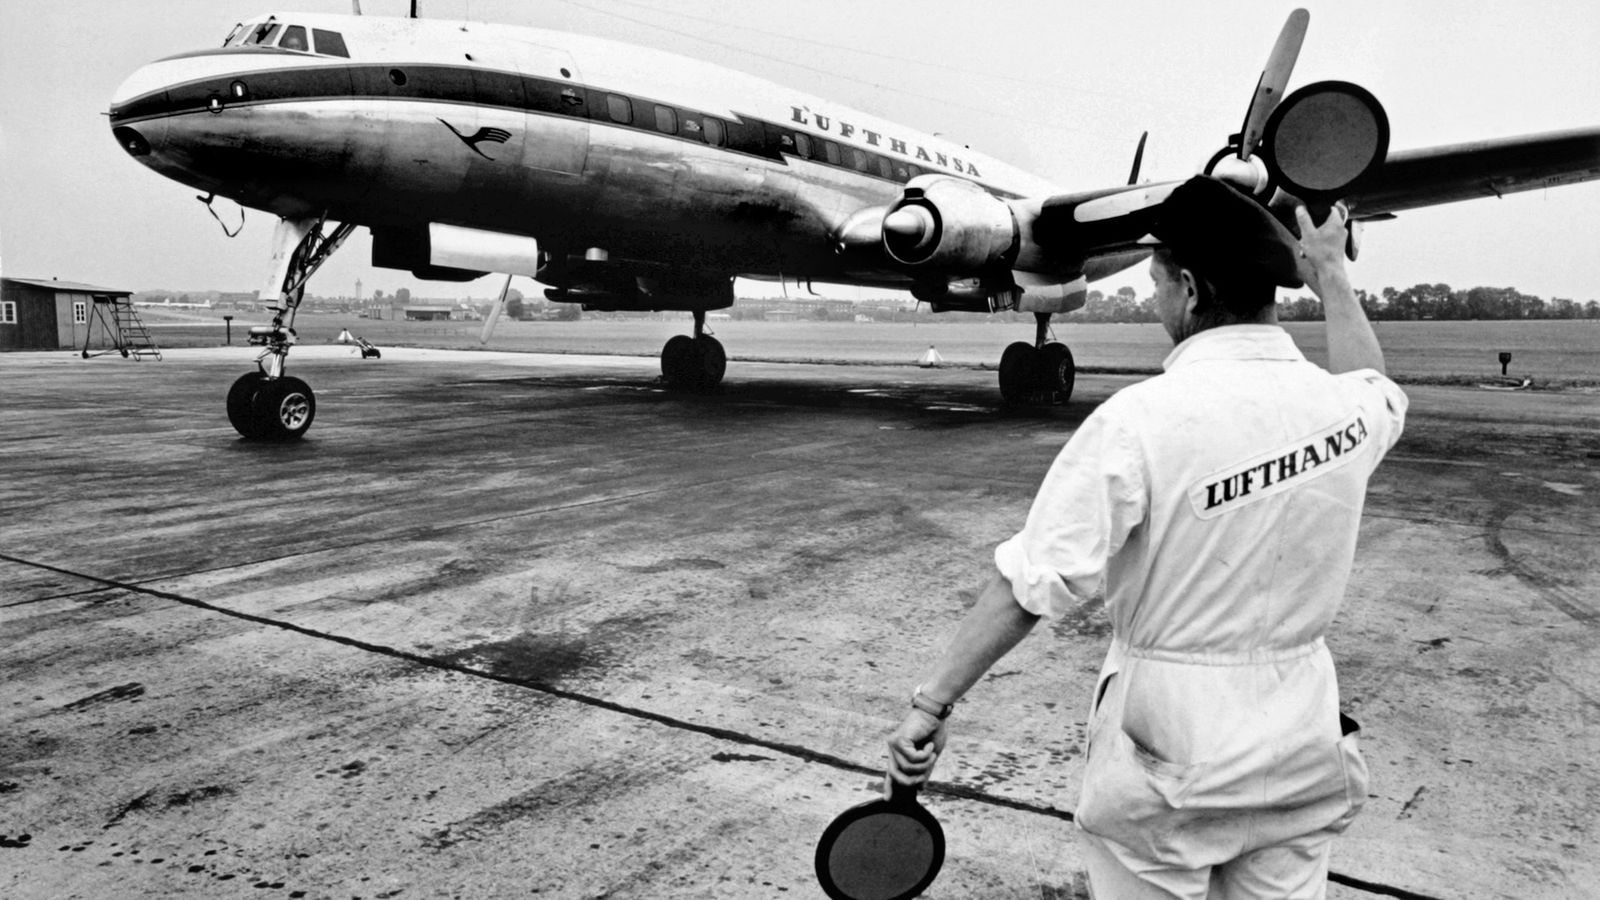 Stichtag - 8. Juni 1955: Erster Transatlantik-Flug der Lufthansa nach